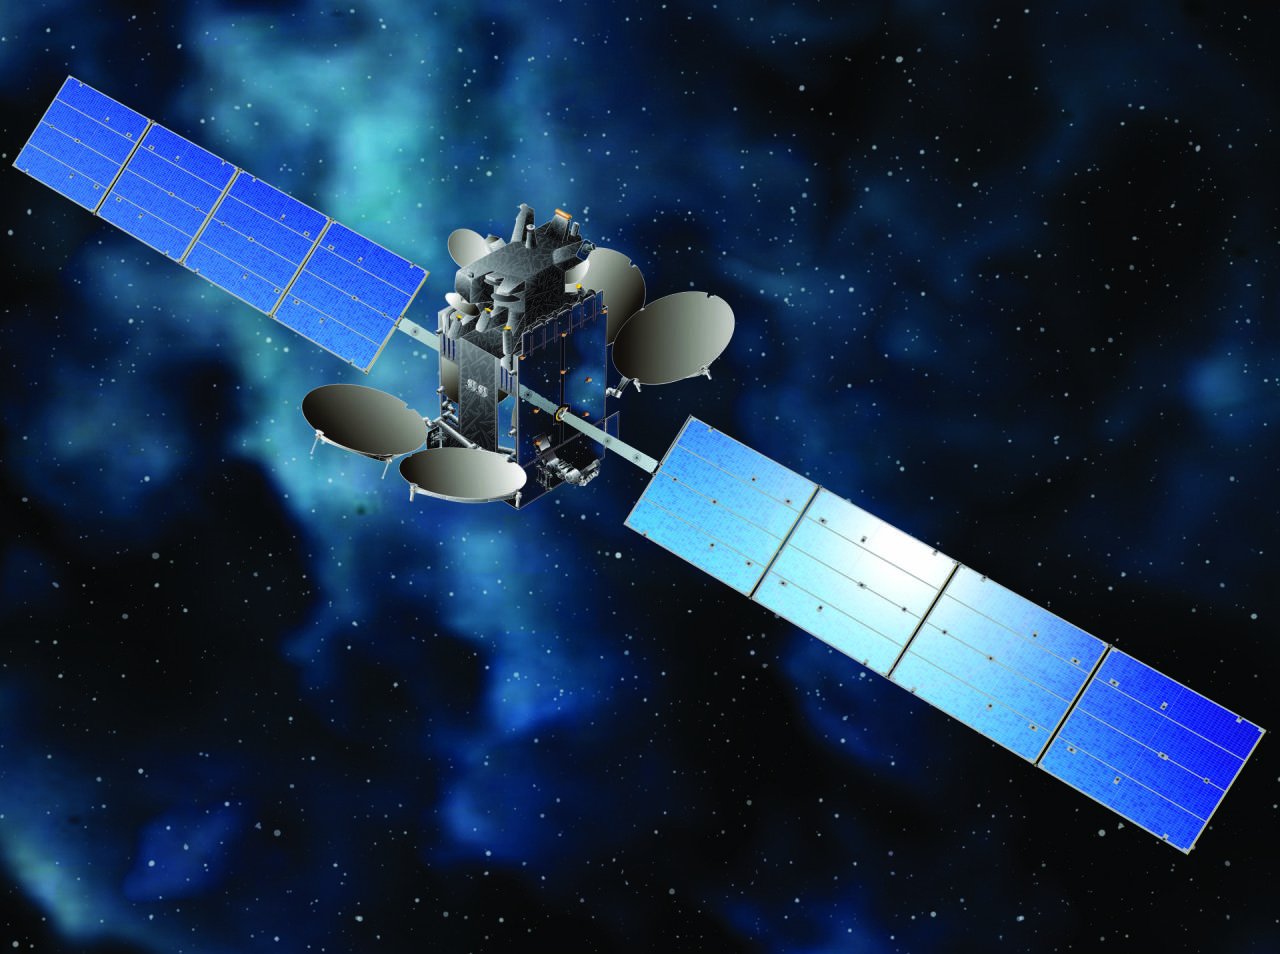 Azerbaijan's second satellite reaches test orbit